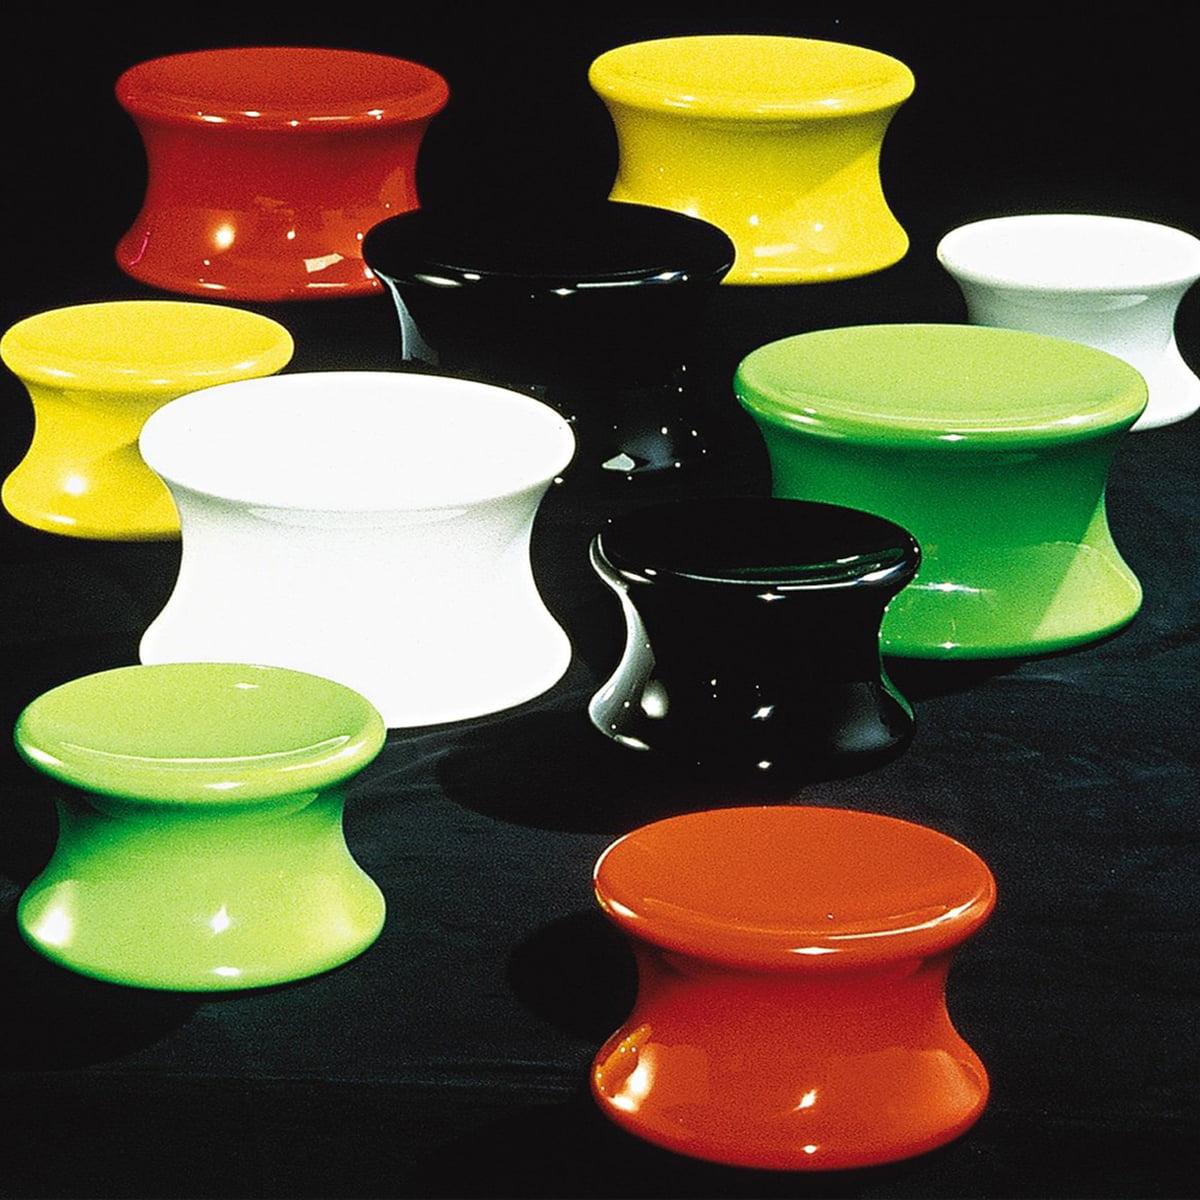 Mushroom ist einer der ältesten Entwürfe von Eero und gehört in seiner Fiberglasform zur gleichen Designfamilie wie der Ball Chair, Pastil und Tomato. Er kann als Hocker oder als kleiner Tisch verwendet werden. Der Pilz aus Fiberglas wurde 1967 von